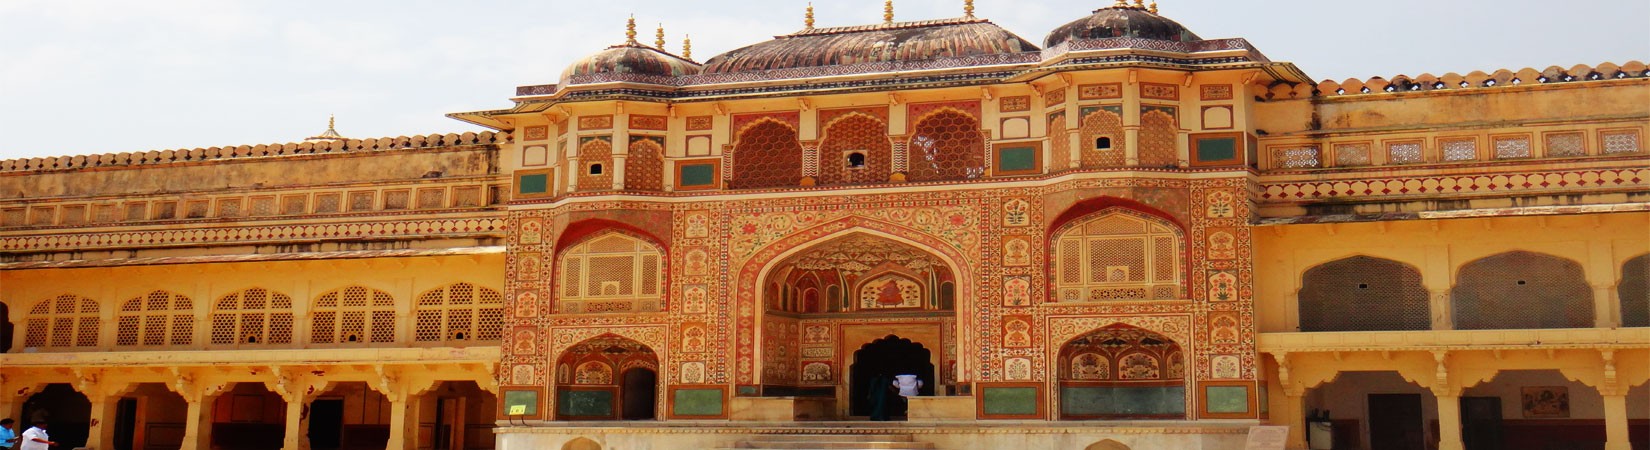 Jaipur Palace, India